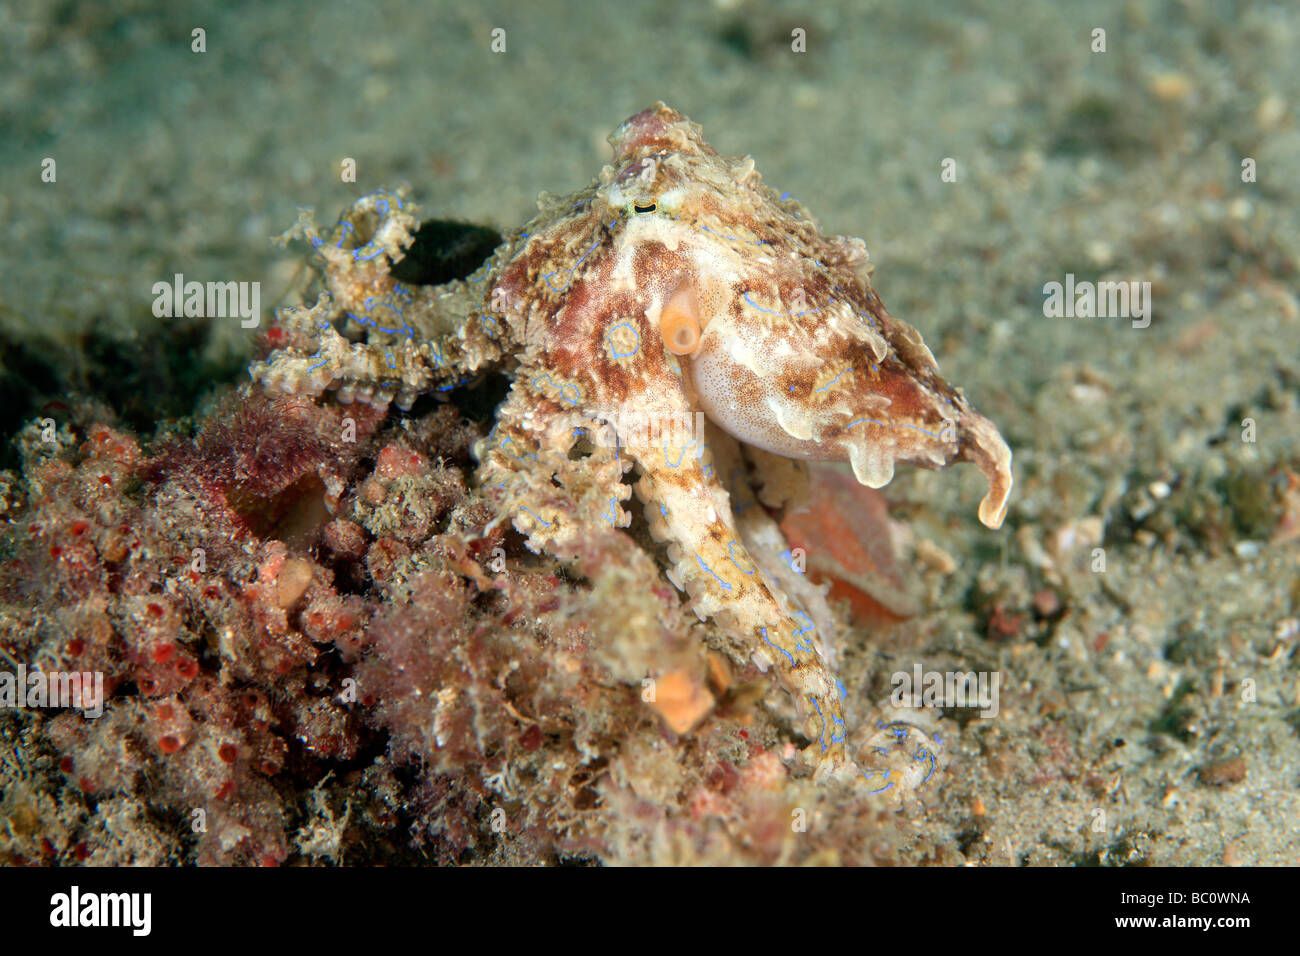 Velenosi blu meridionale-inanellati Octopus, Hapalochlaena maculosa. Questo polpo è in grado di iniettare un potente neurotossina che può uccidere. Foto Stock